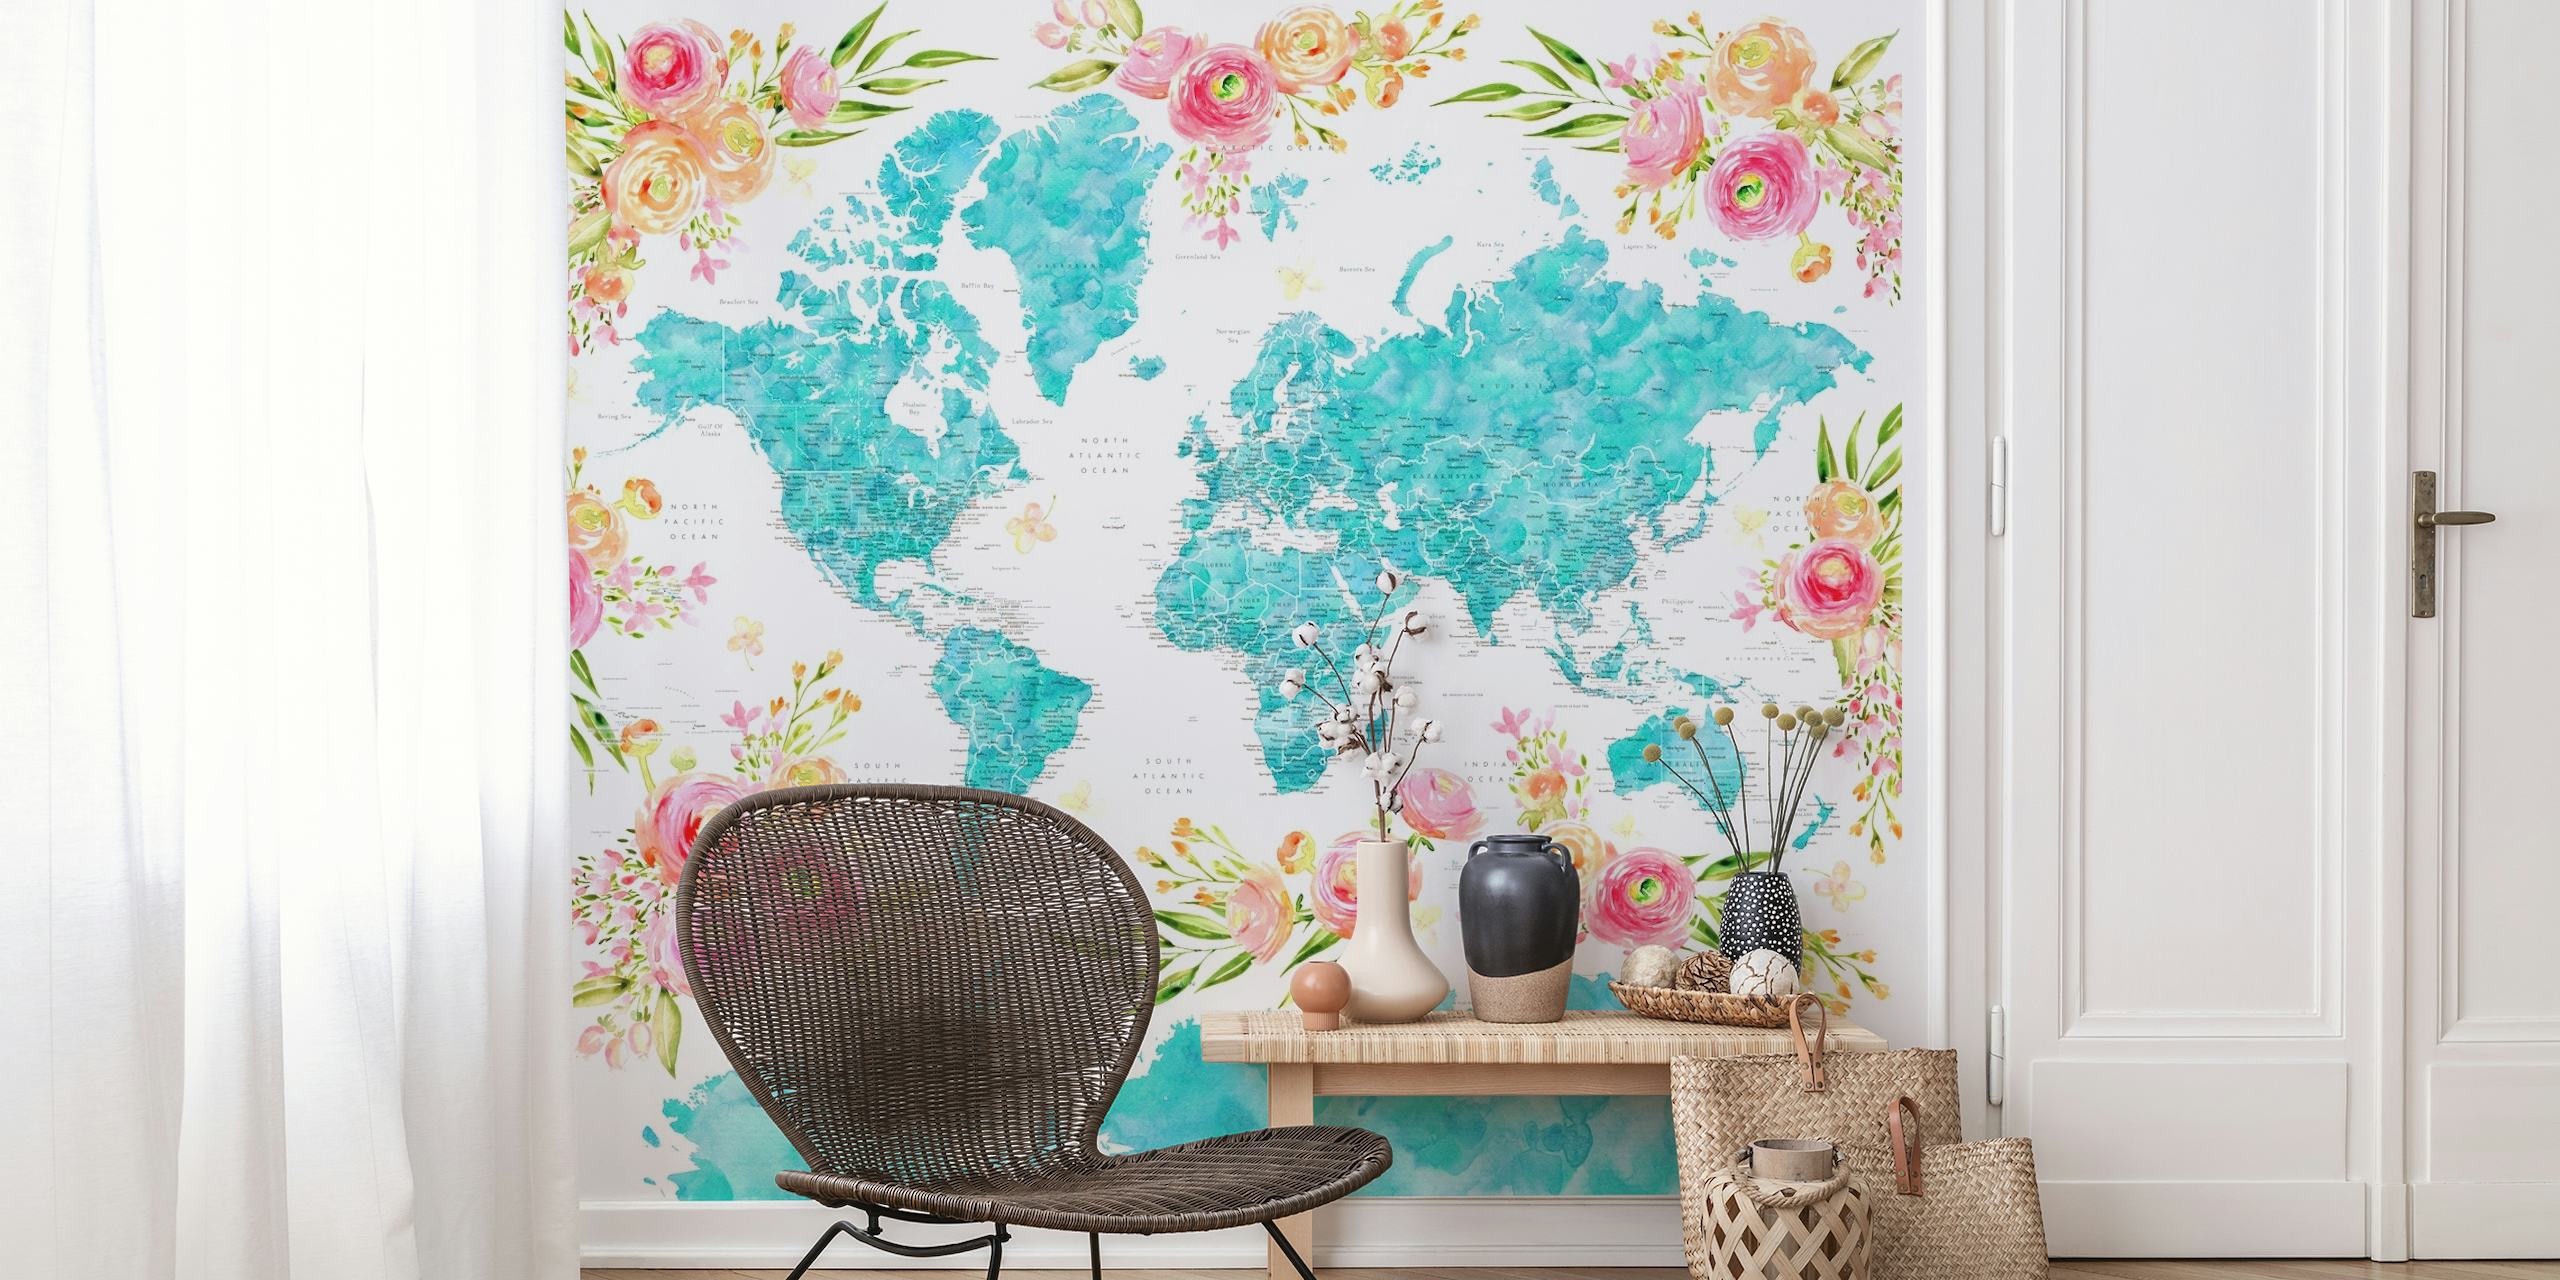 Zidna slika šarene karte svijeta s cvjetnim uzorcima koji ukrašavaju kontinente